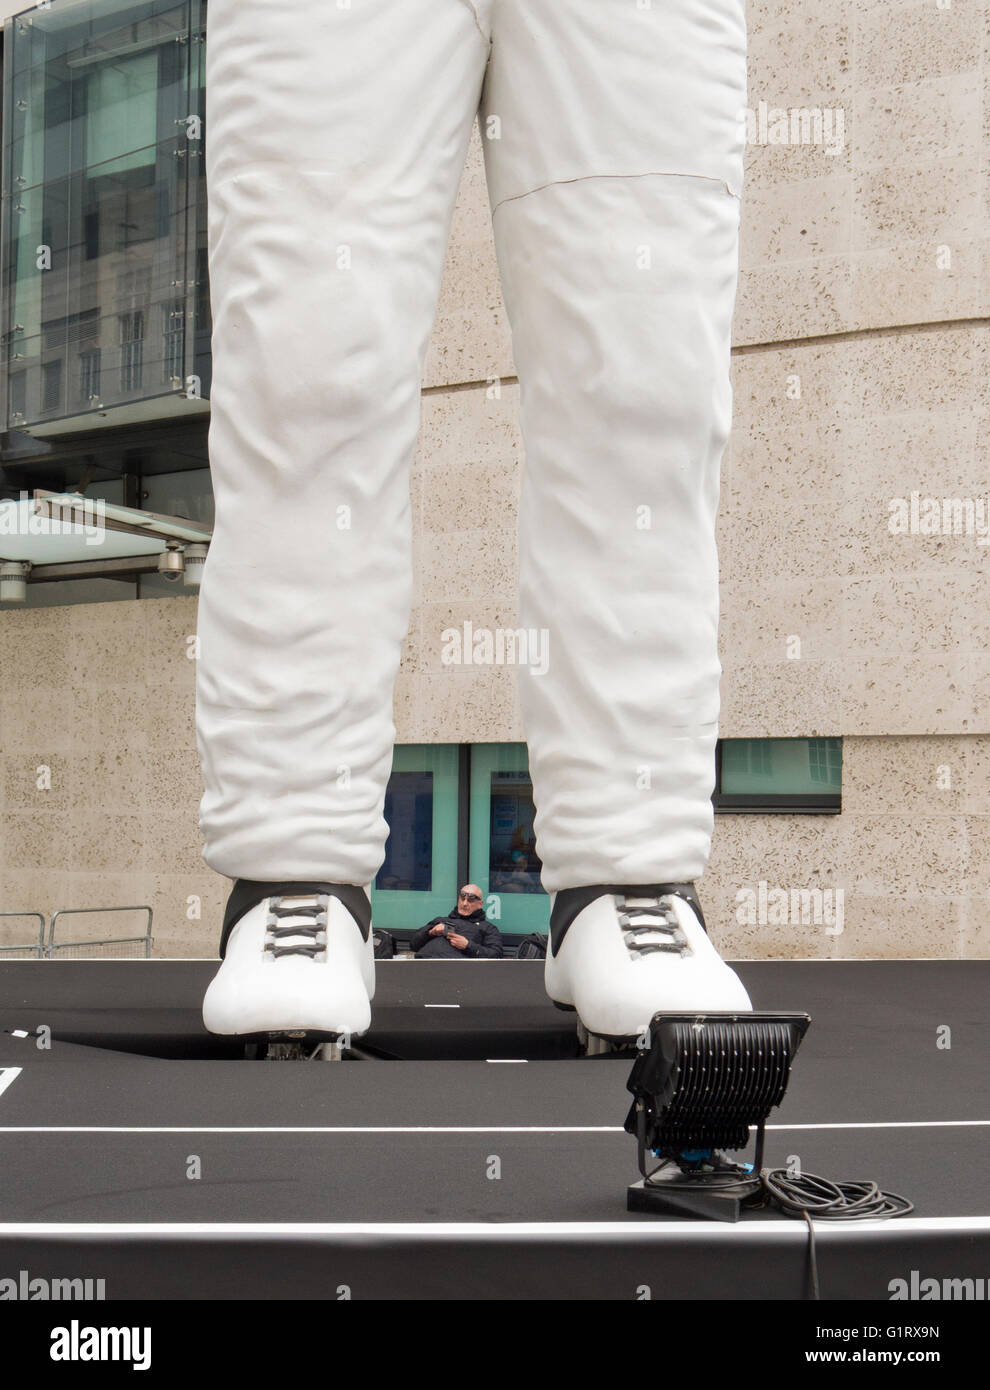 Un garde de sécurité à l'extérieur de la BBC, photographiés entre les pieds d'un grand modèle de Stig le mystère du pilote de Top Gear. Banque D'Images